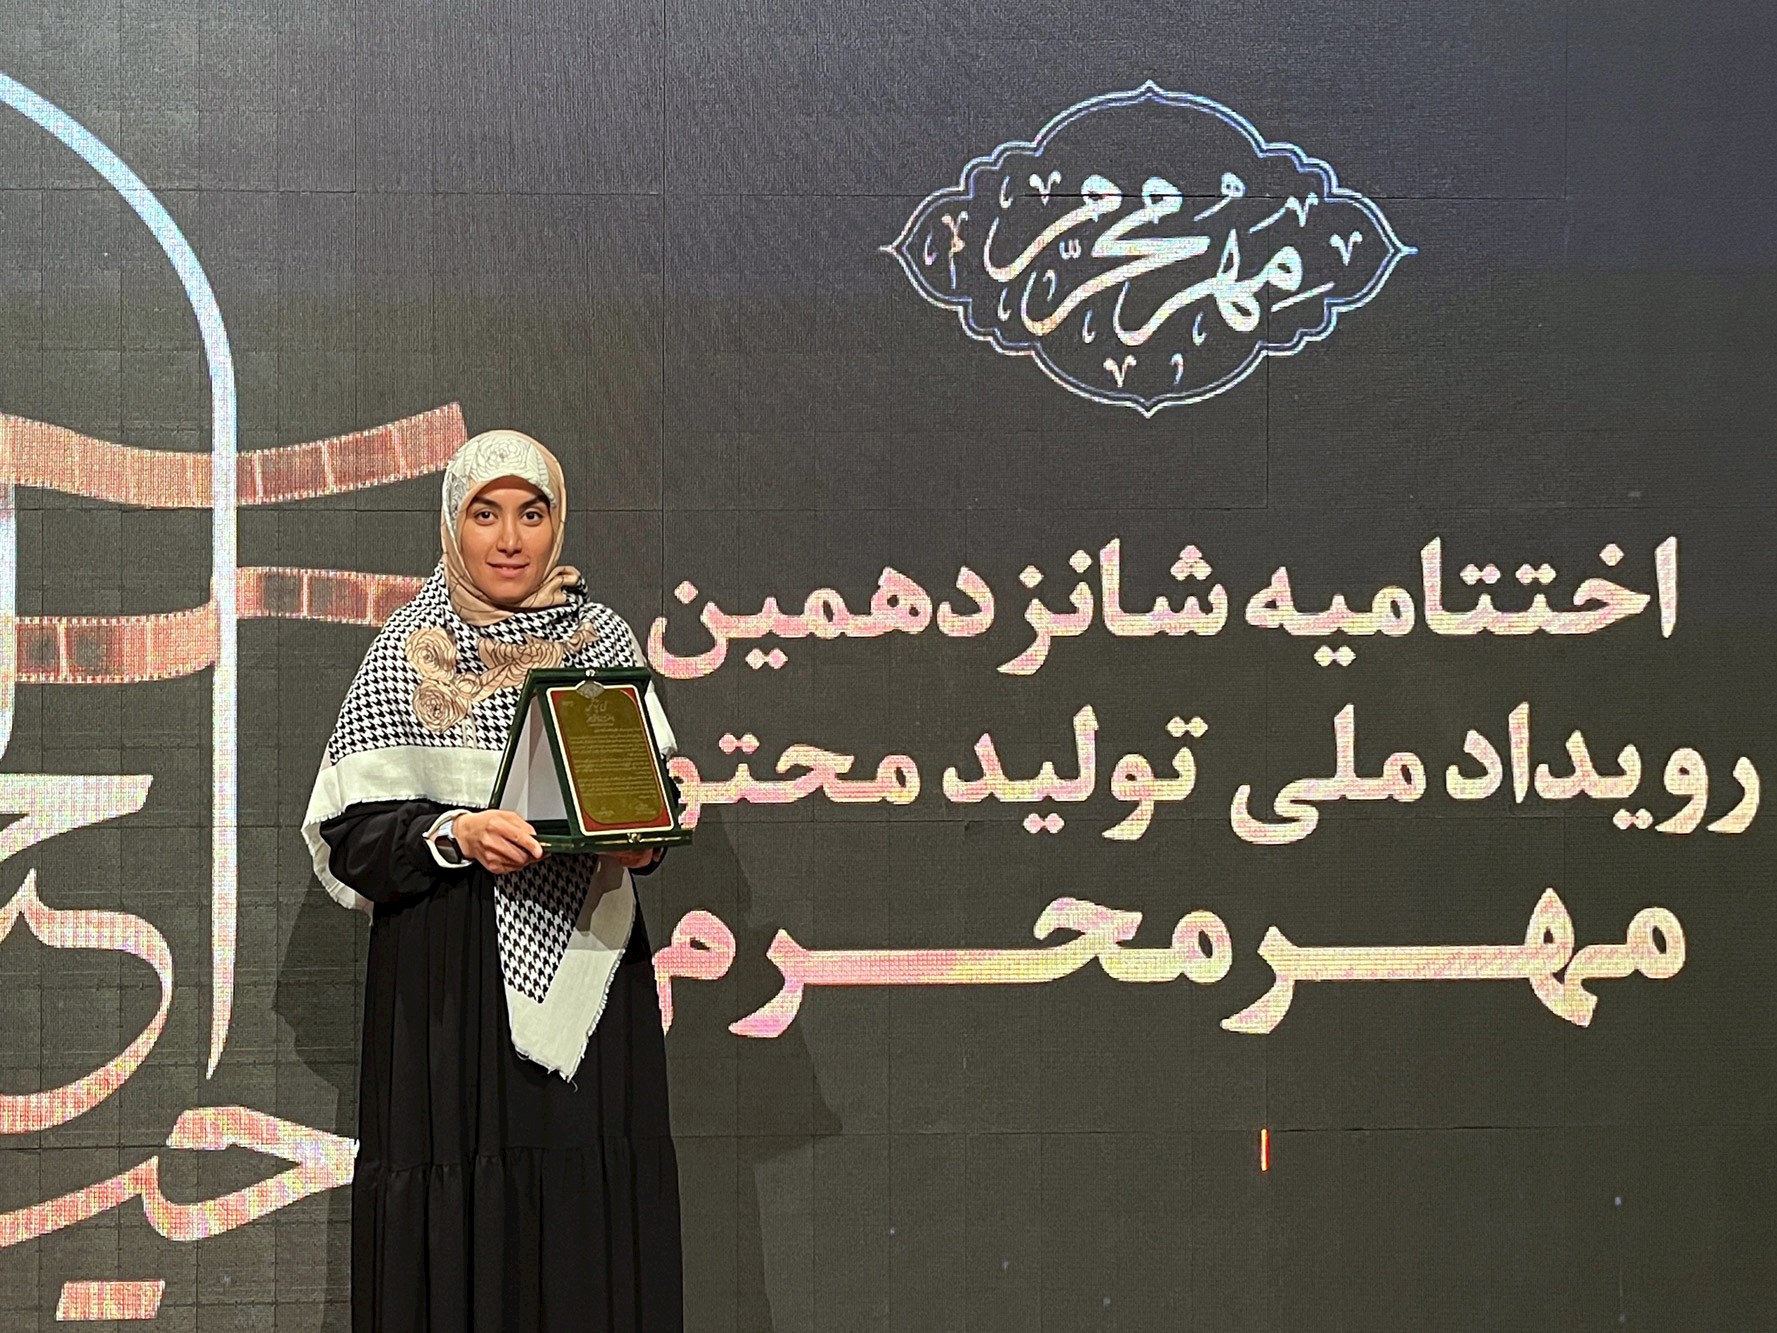 جشنواره | مجموعه عکس «بدرقه راه» در سوگواره مهرمحرم برگزیده شد